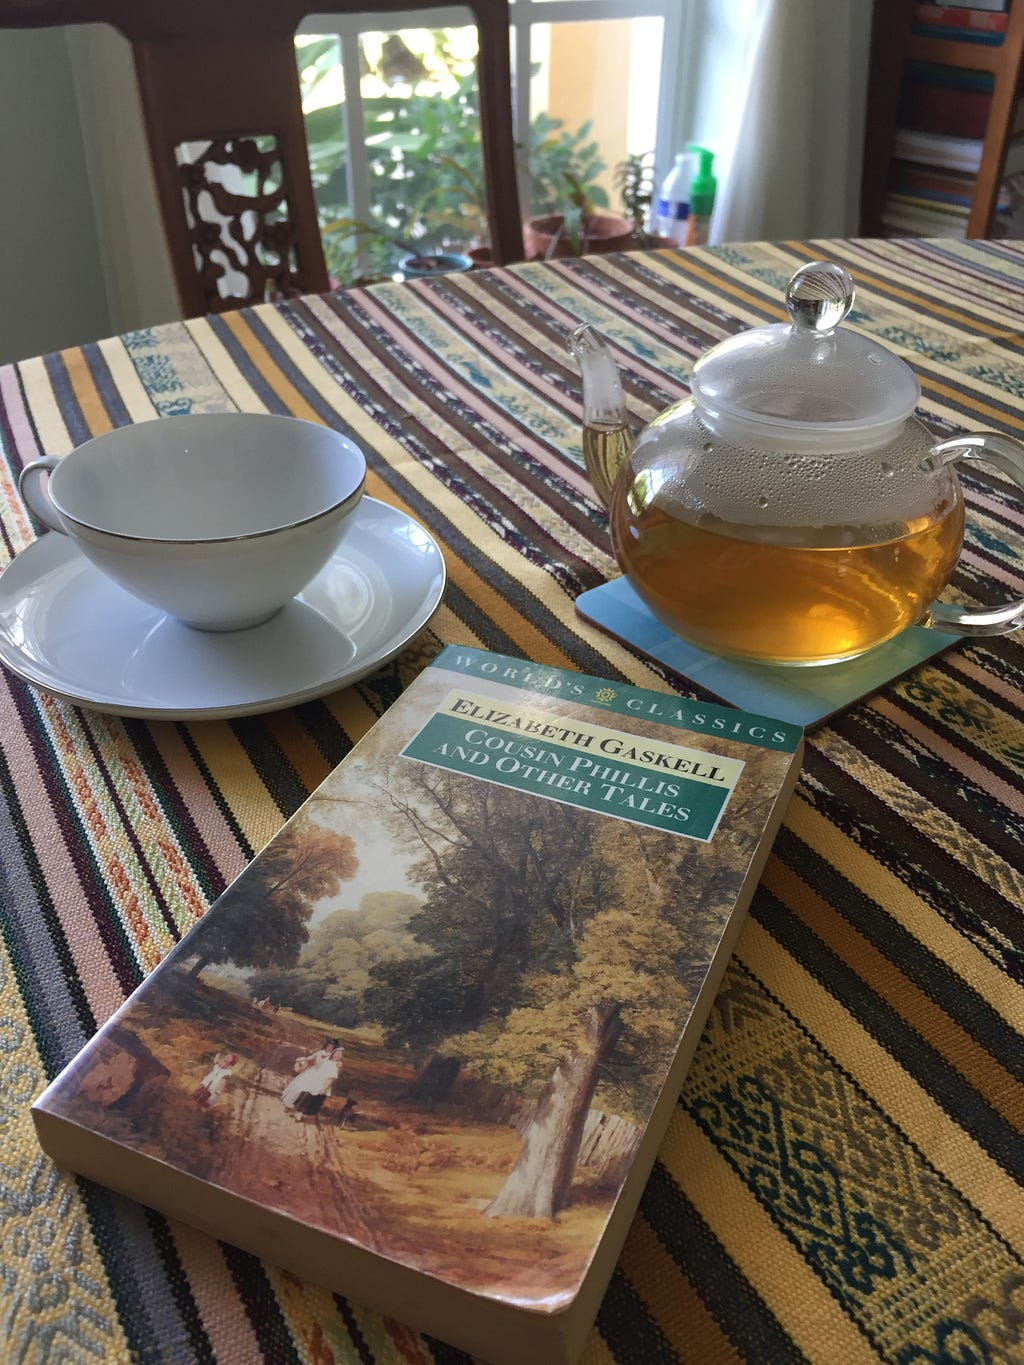 A teacup, teapot and a book